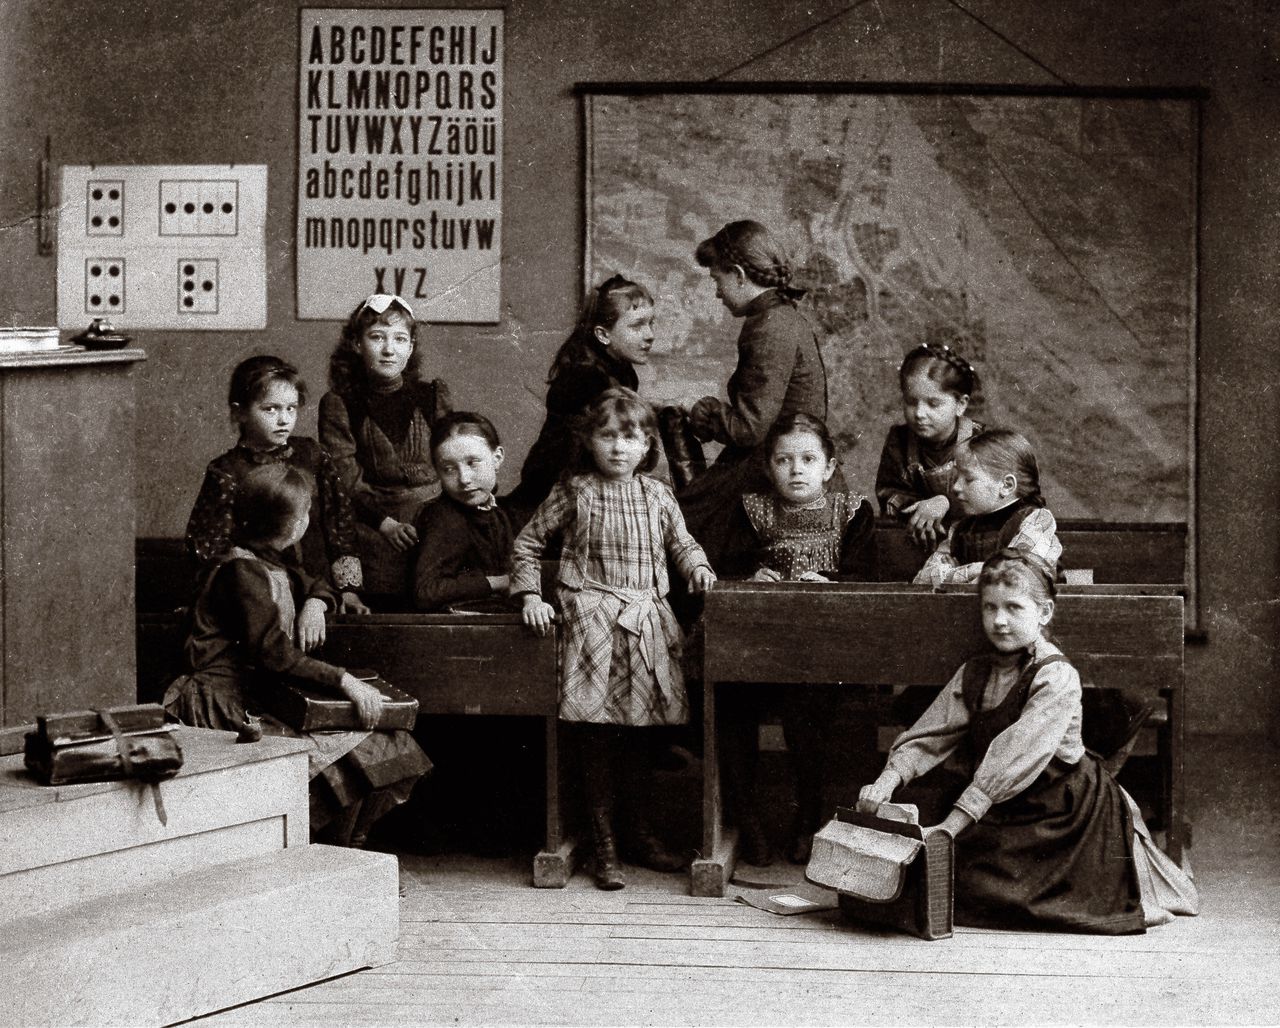 Een meisjesschool in Oostenrijk, rond 1900. Heliografie van J. Blechinger.